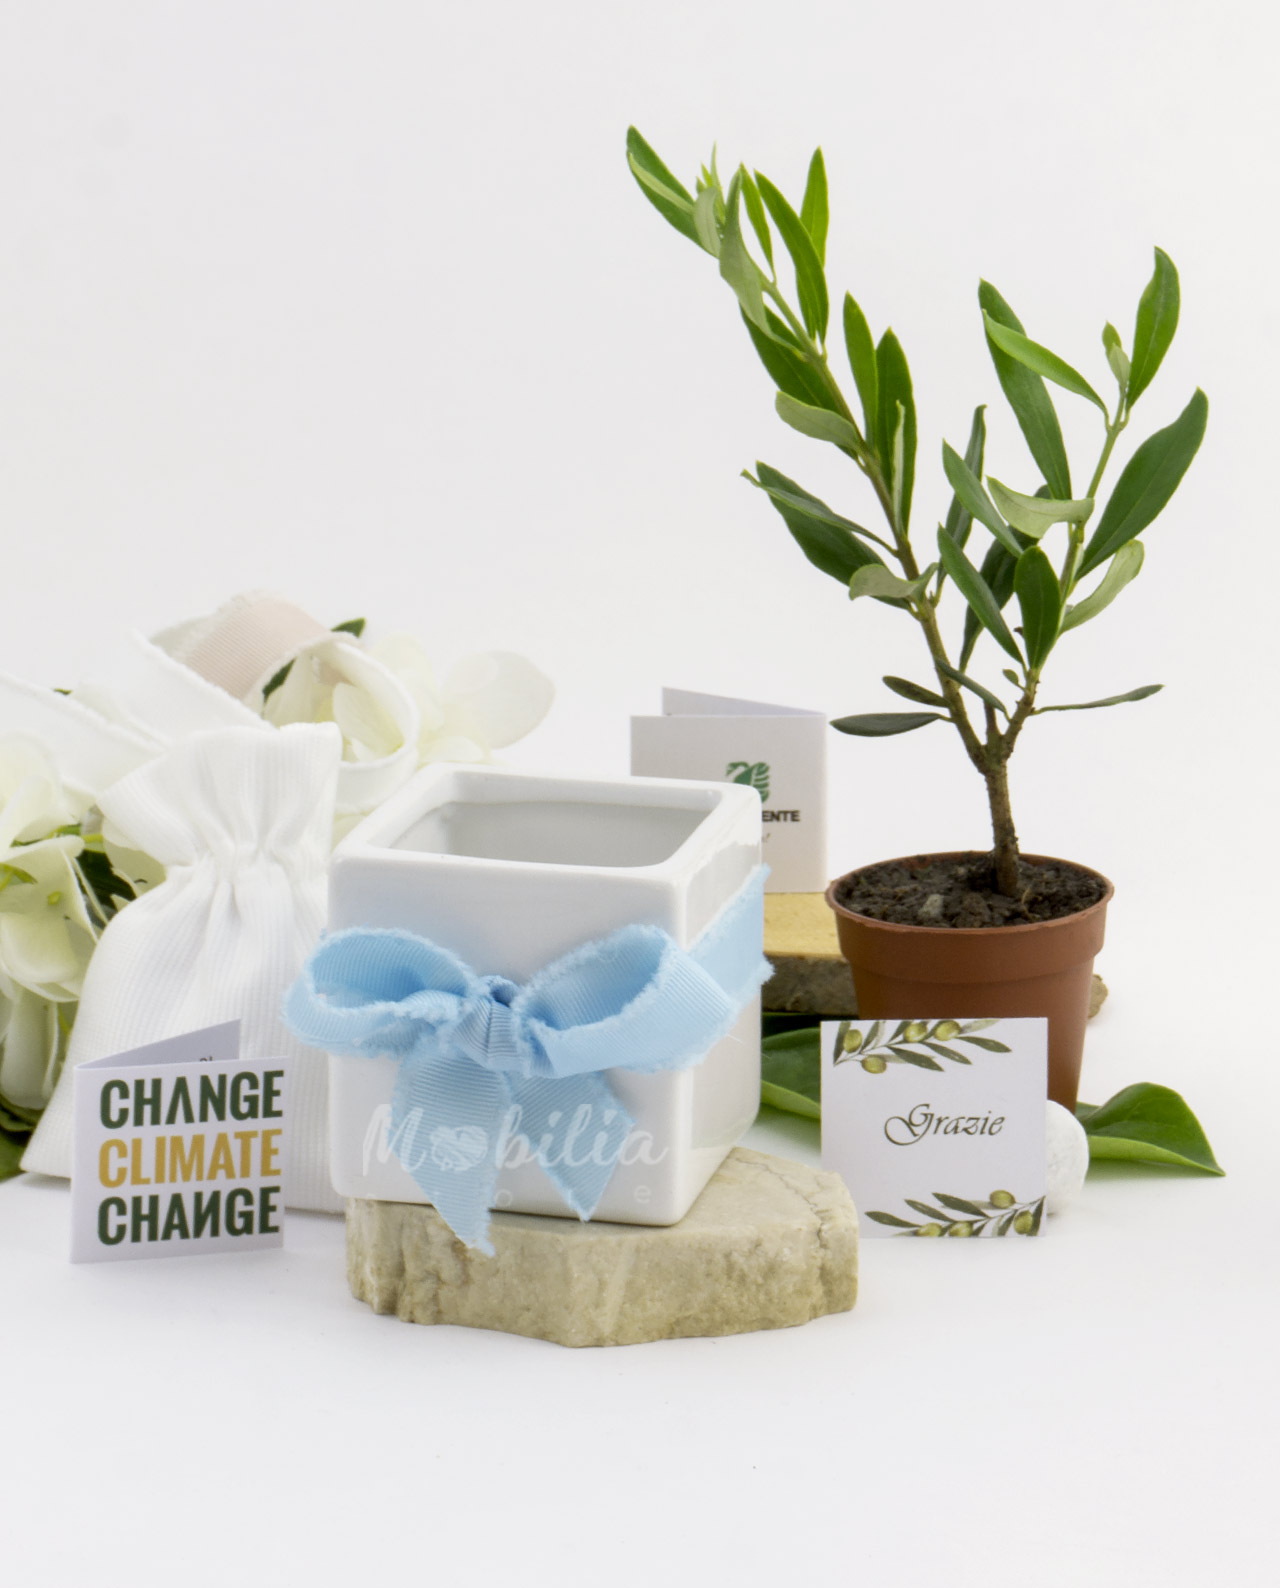 Le bomboniere solidali del matrimonio: un gesto speciale con i bonsai